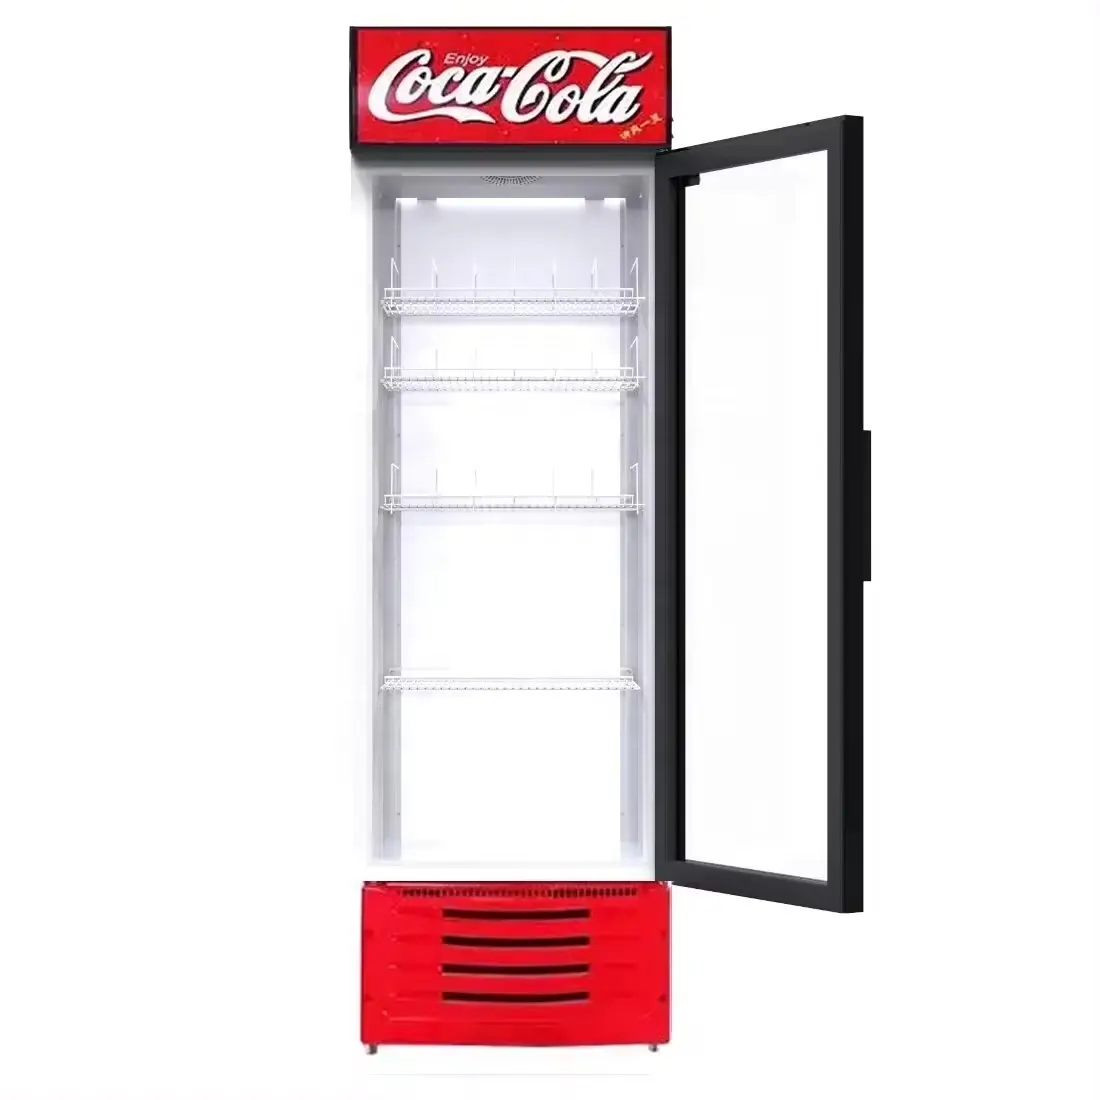 Hochwertiger transparenter Glasdruck für Kaltgetränke Kühlschrank gebrauchter Supermarktkühlschrank-Sticker und Gefrierschrank-Aufkleber